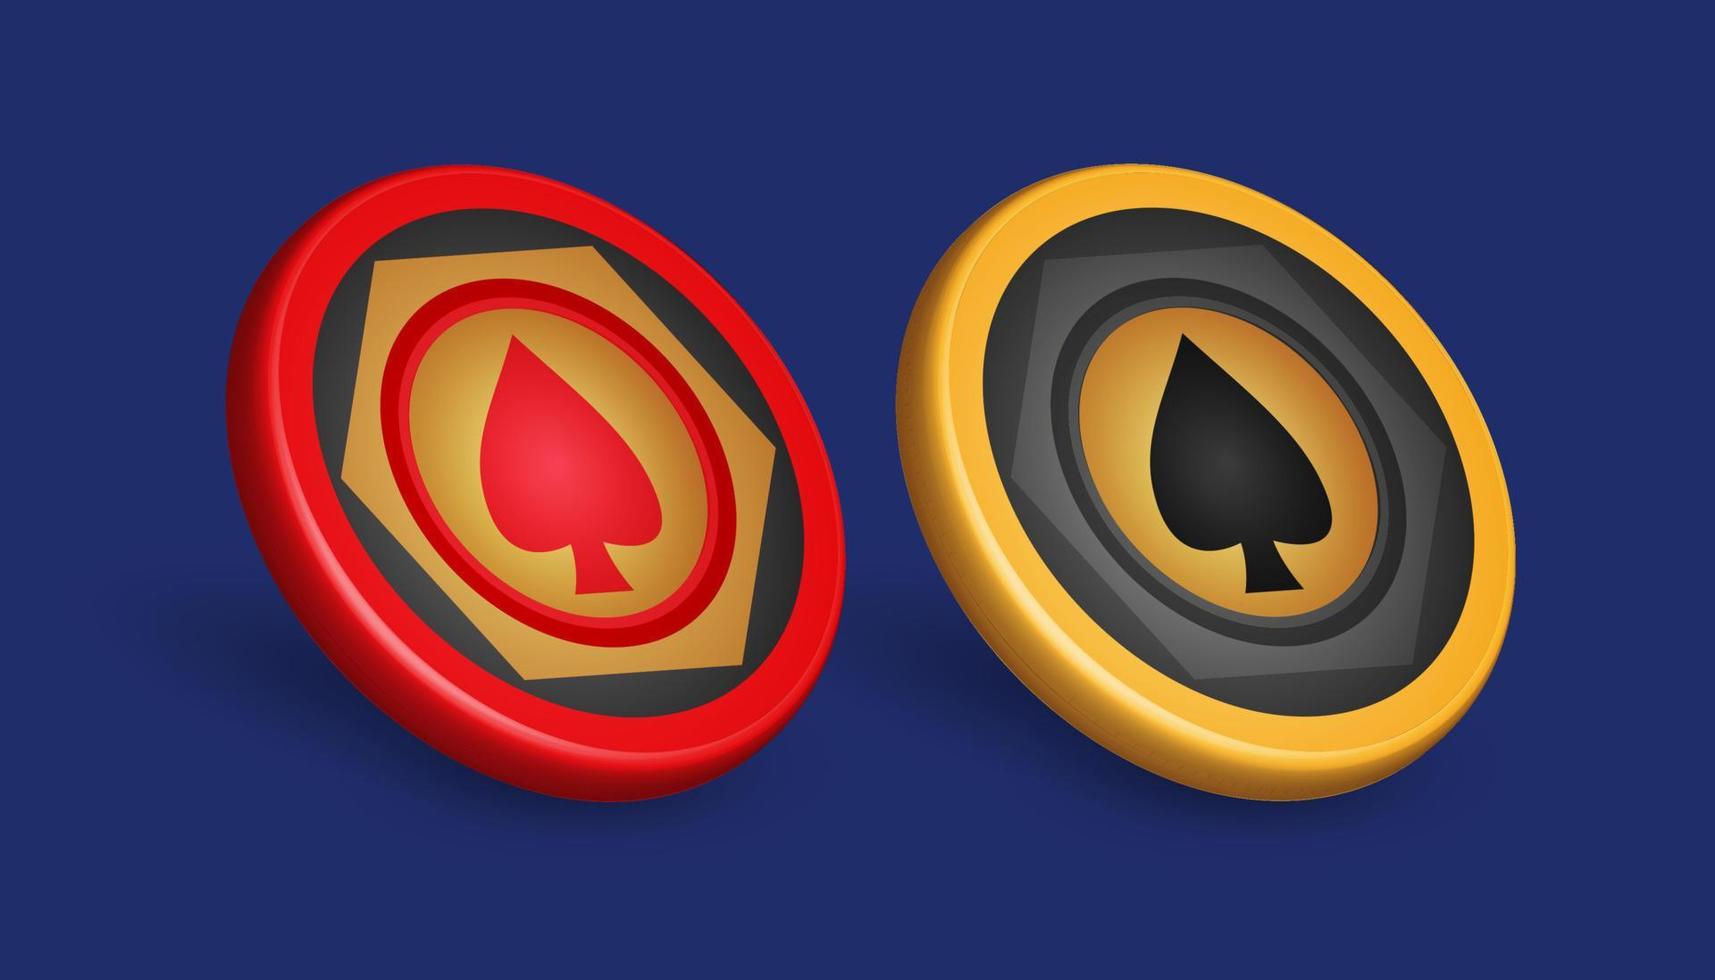 ficha de pôquer de ouro e vermelho, com símbolo de diamante, elementos de design de jogos, ilustração vetorial 3d vetor